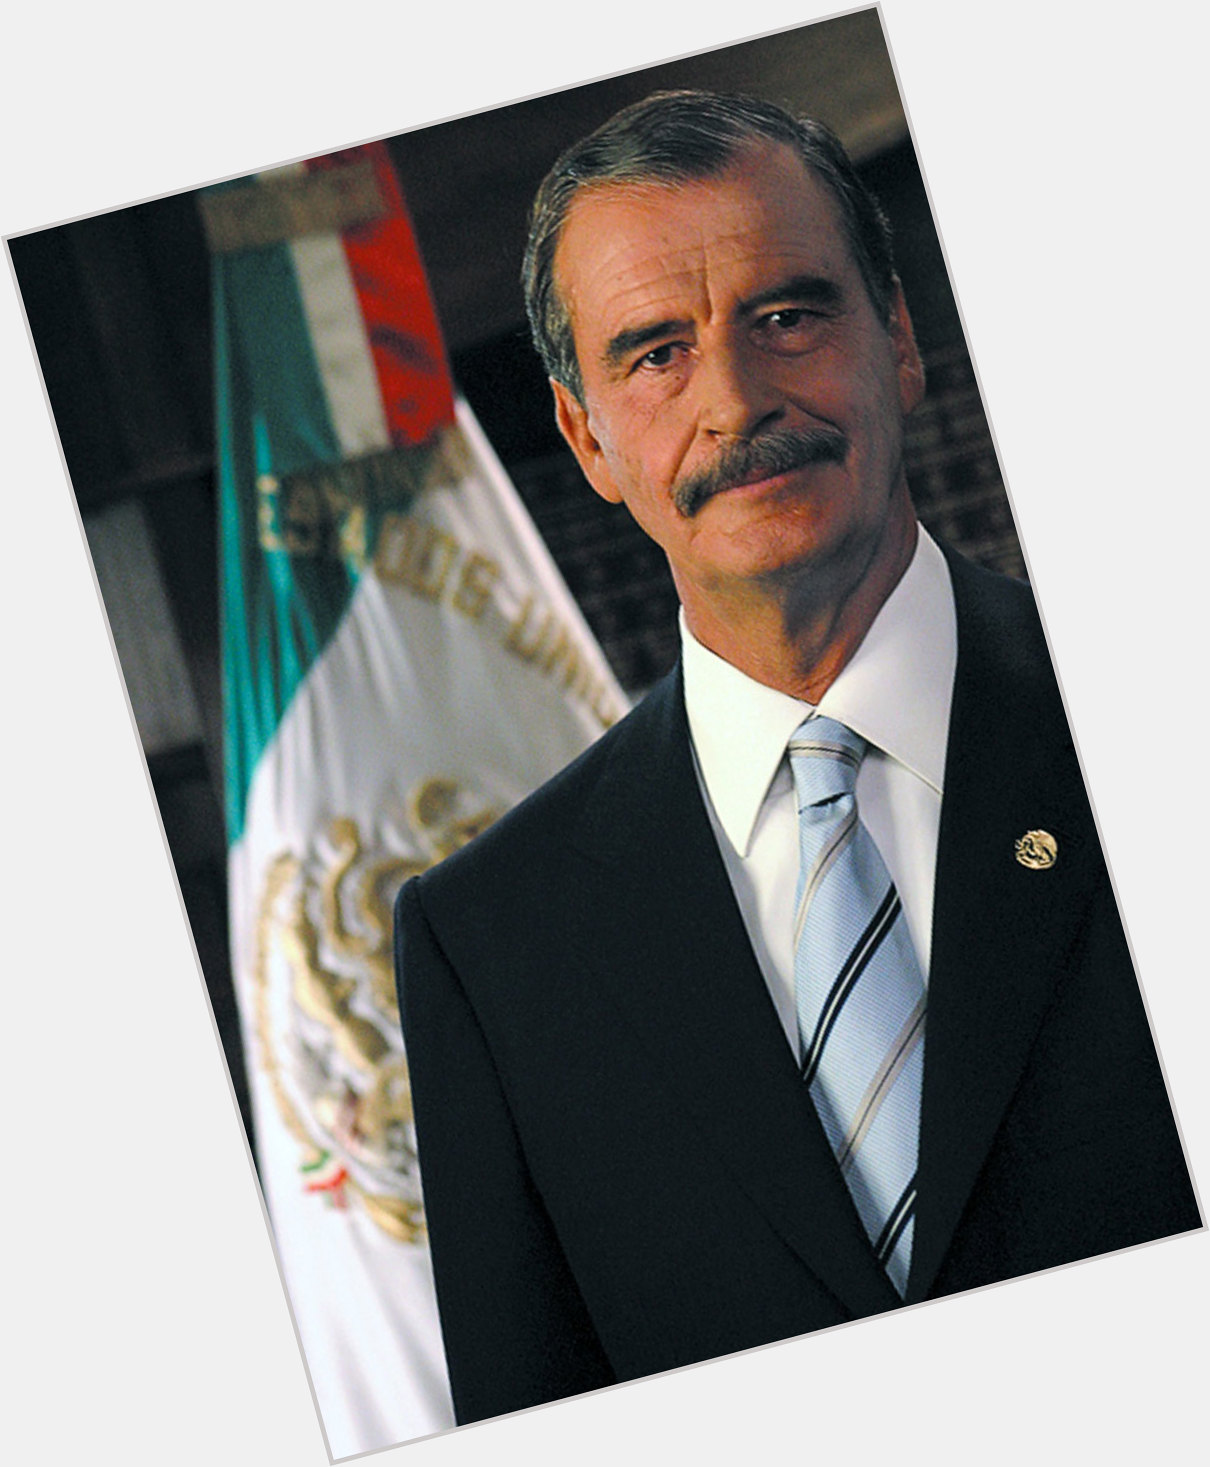 Vicente Fox dating 2.jpg